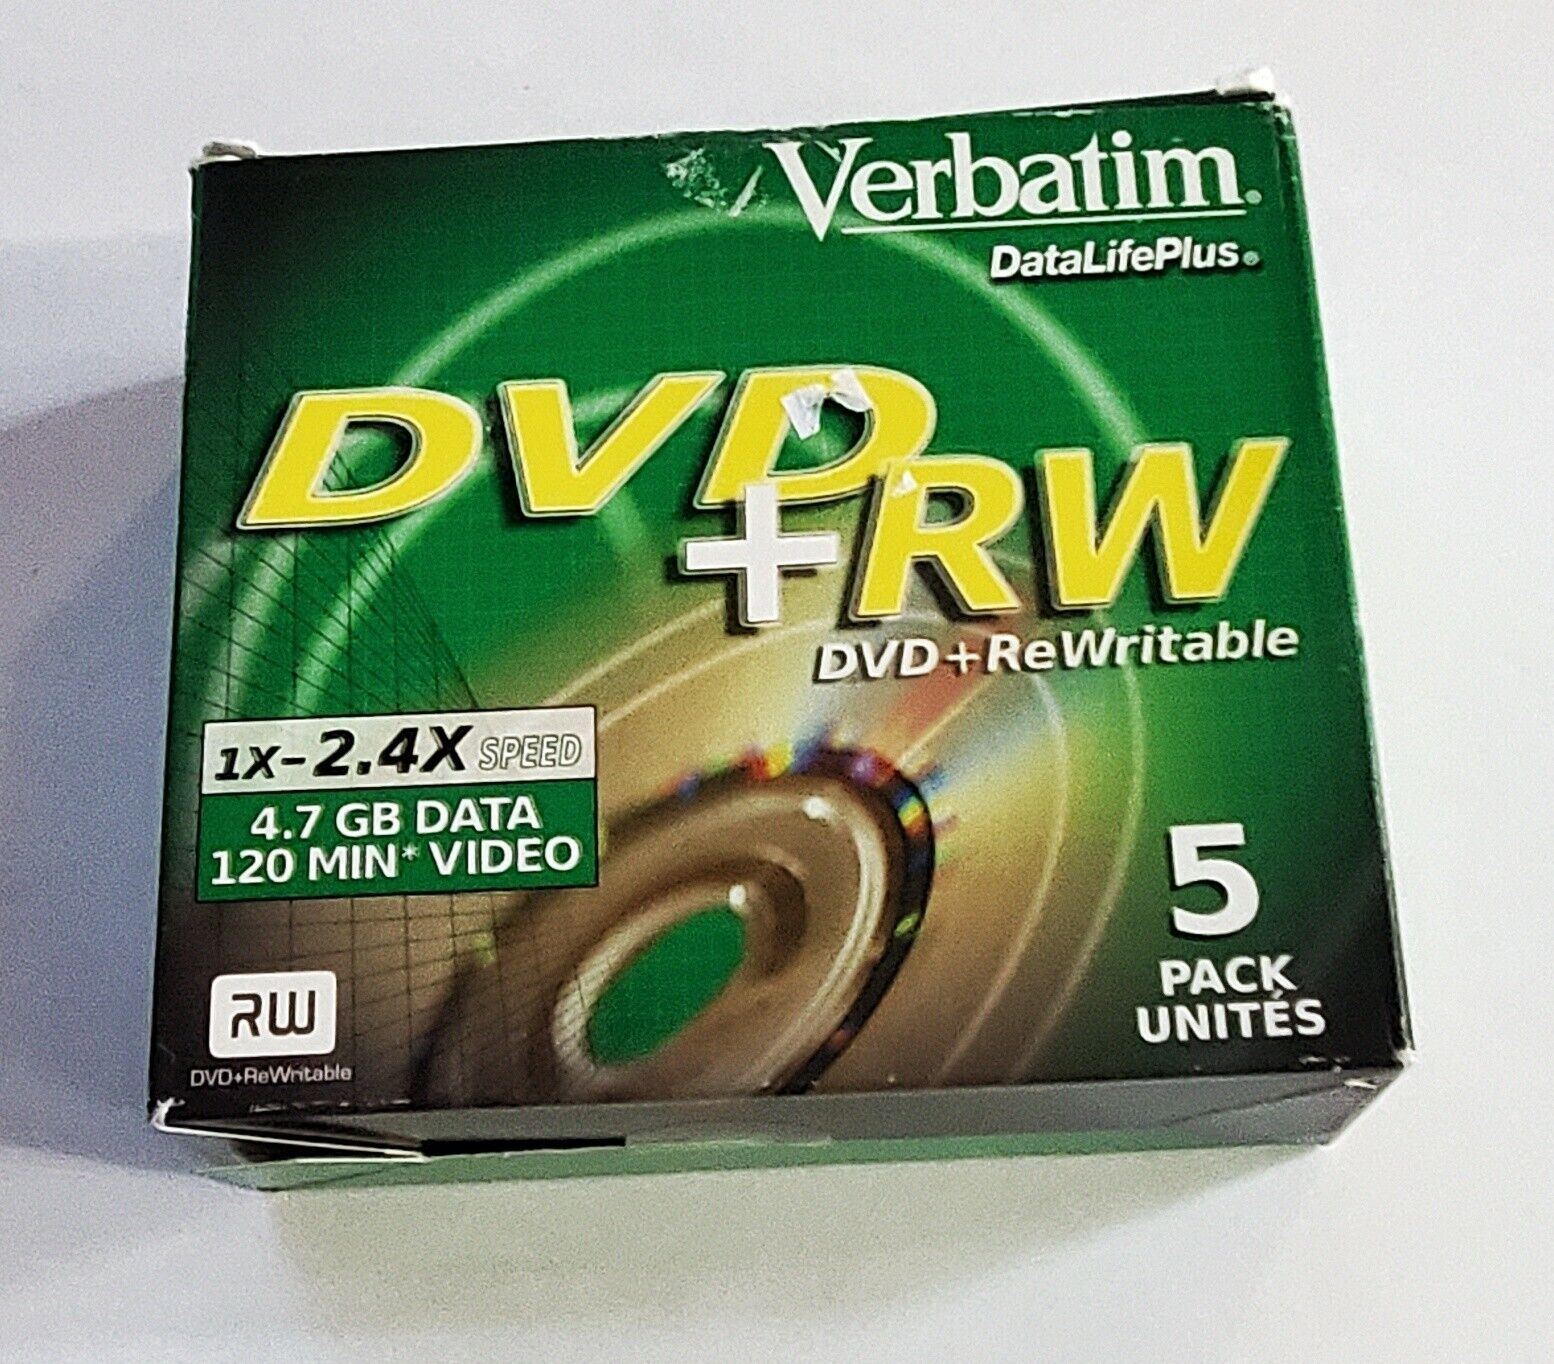 Verbatim DataLifePlus DVD+RW Discs (5-Pack) 1x-2.4x